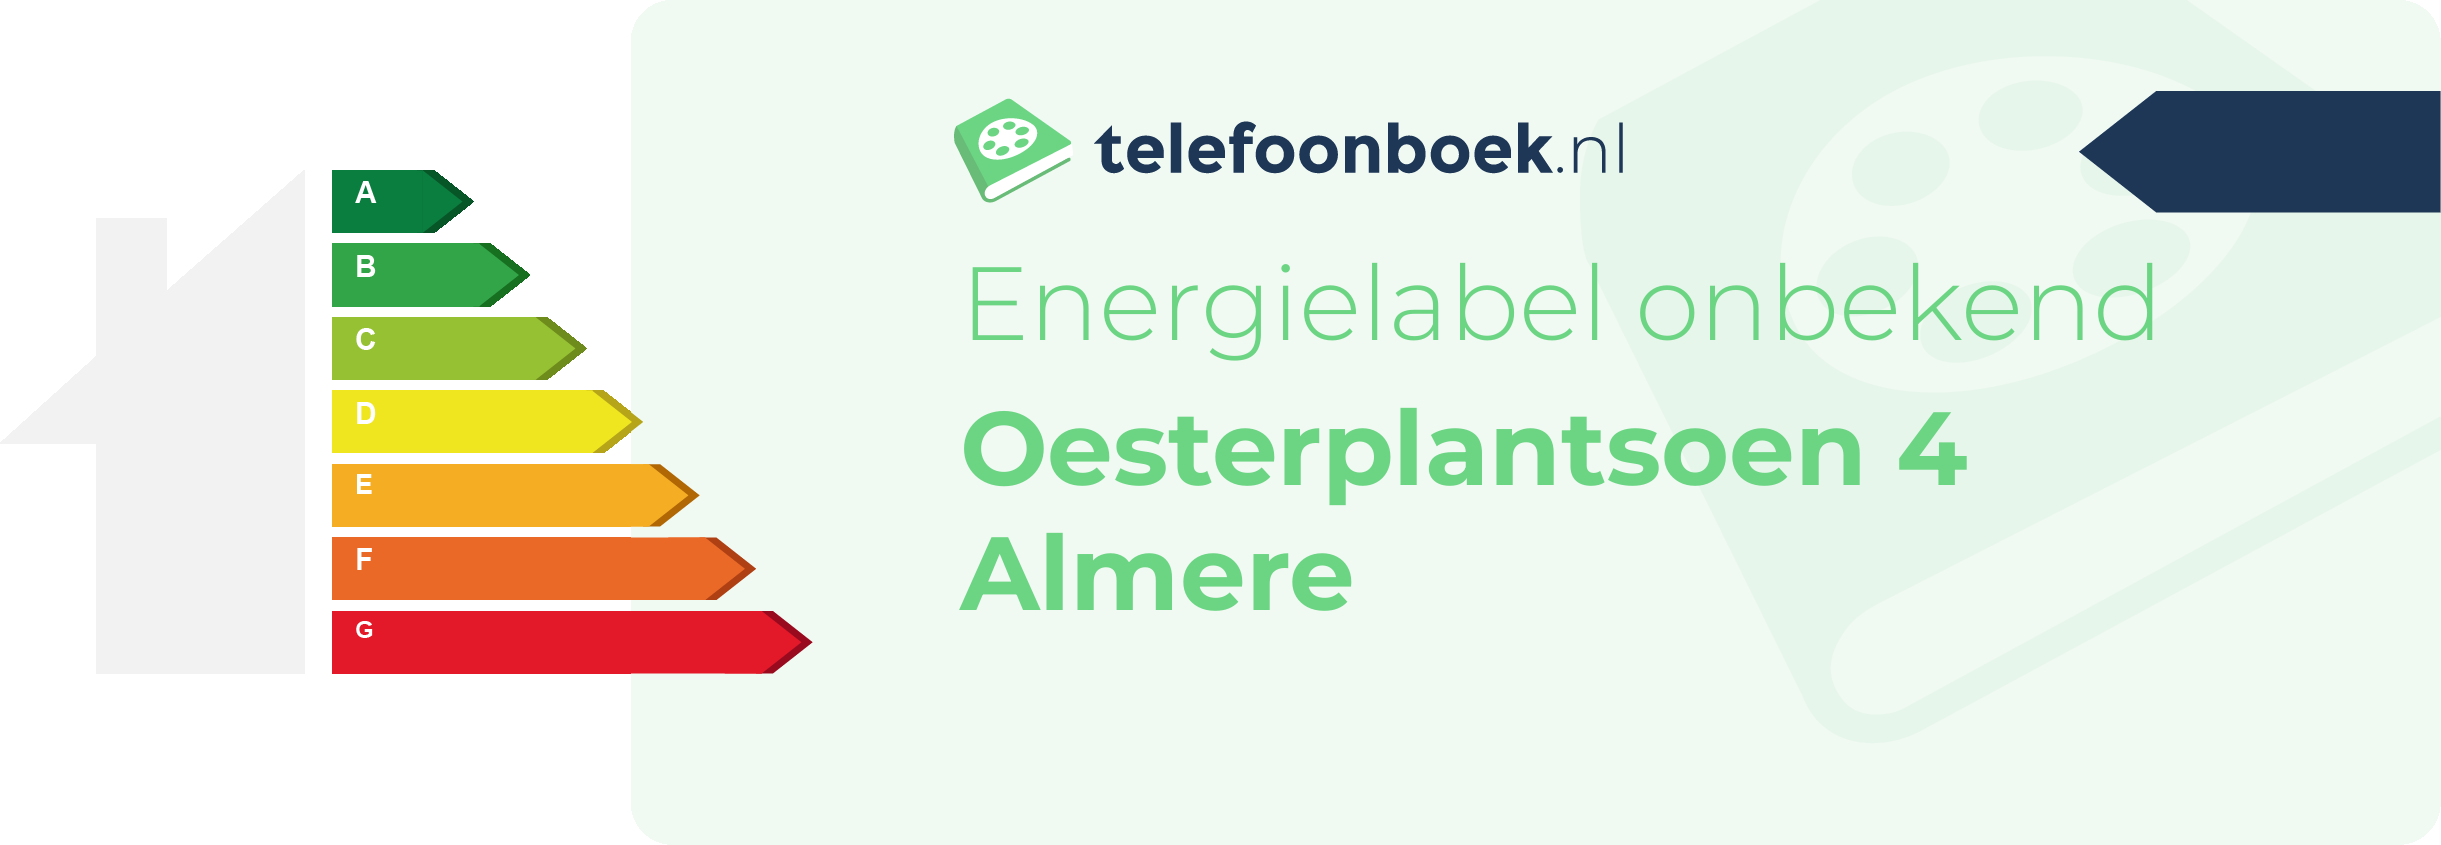 Energielabel Oesterplantsoen 4 Almere